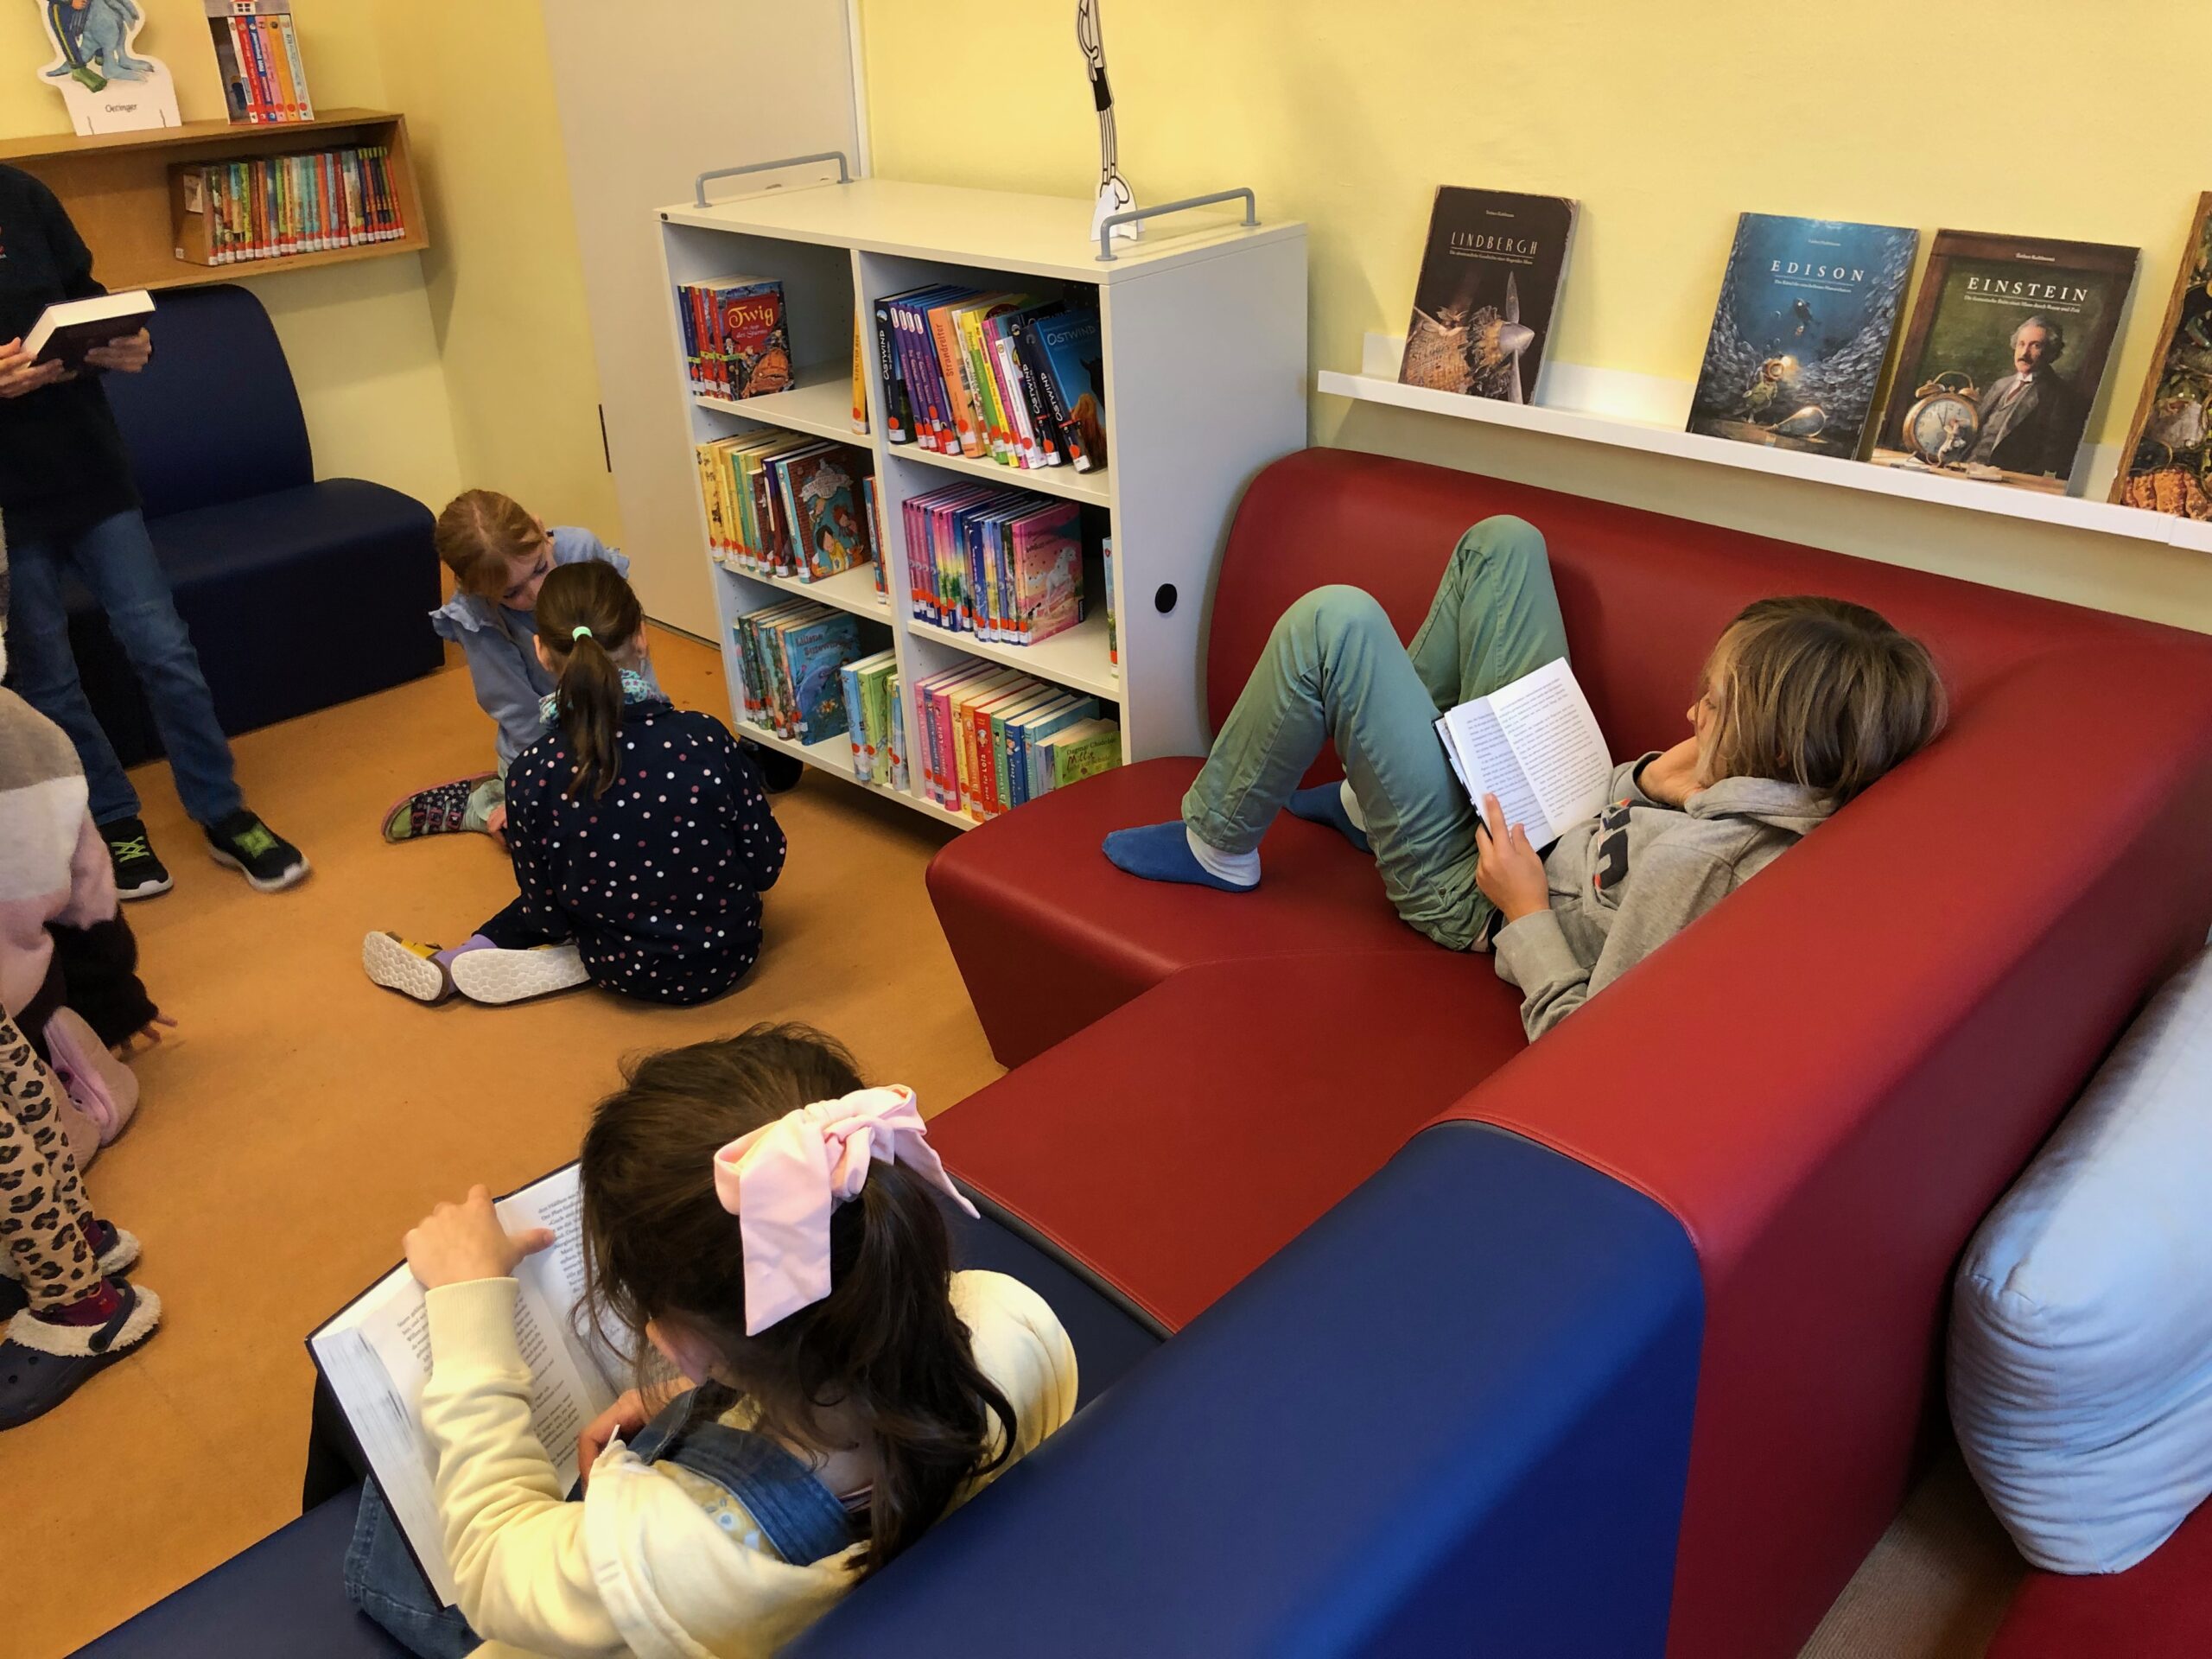 Eröffnung der neuen Schulbücherei – Danke an den Förderverein, Elternspenden und unsere fleißigen Helfer!